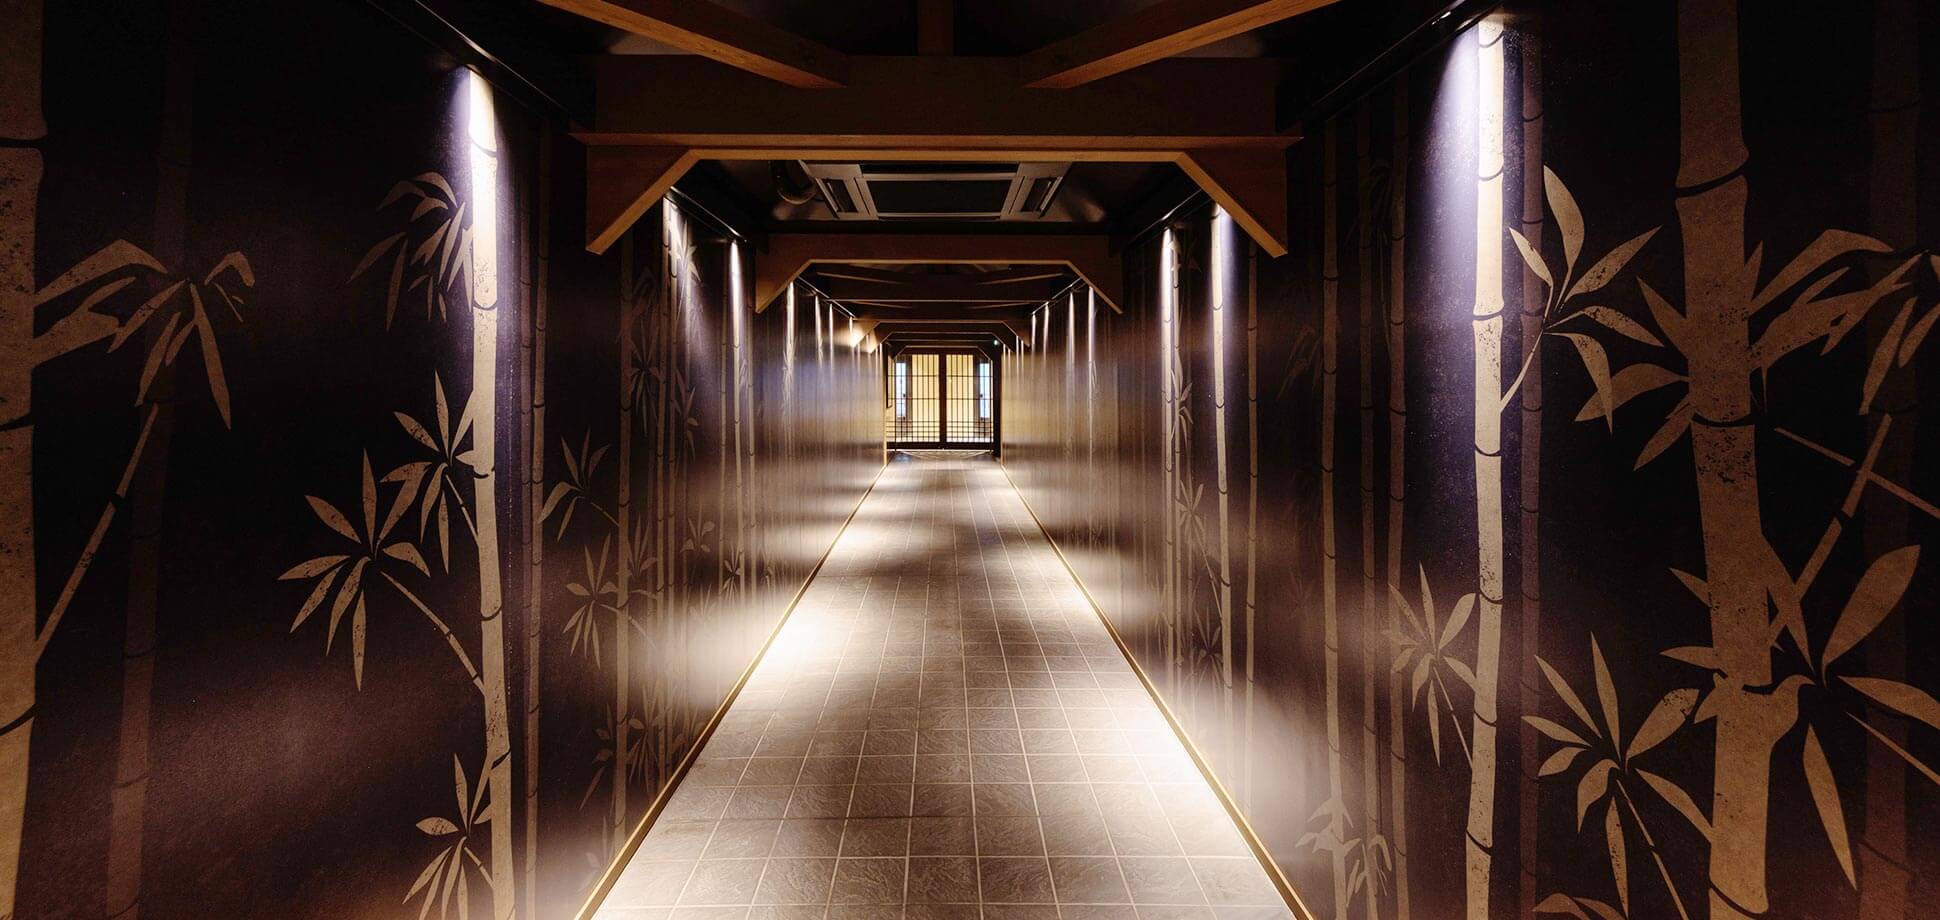 棚湯への渡り廊下は別府公園の竹林をモチーフにした和のデザインに。温泉へ向かう期待感を演出します。